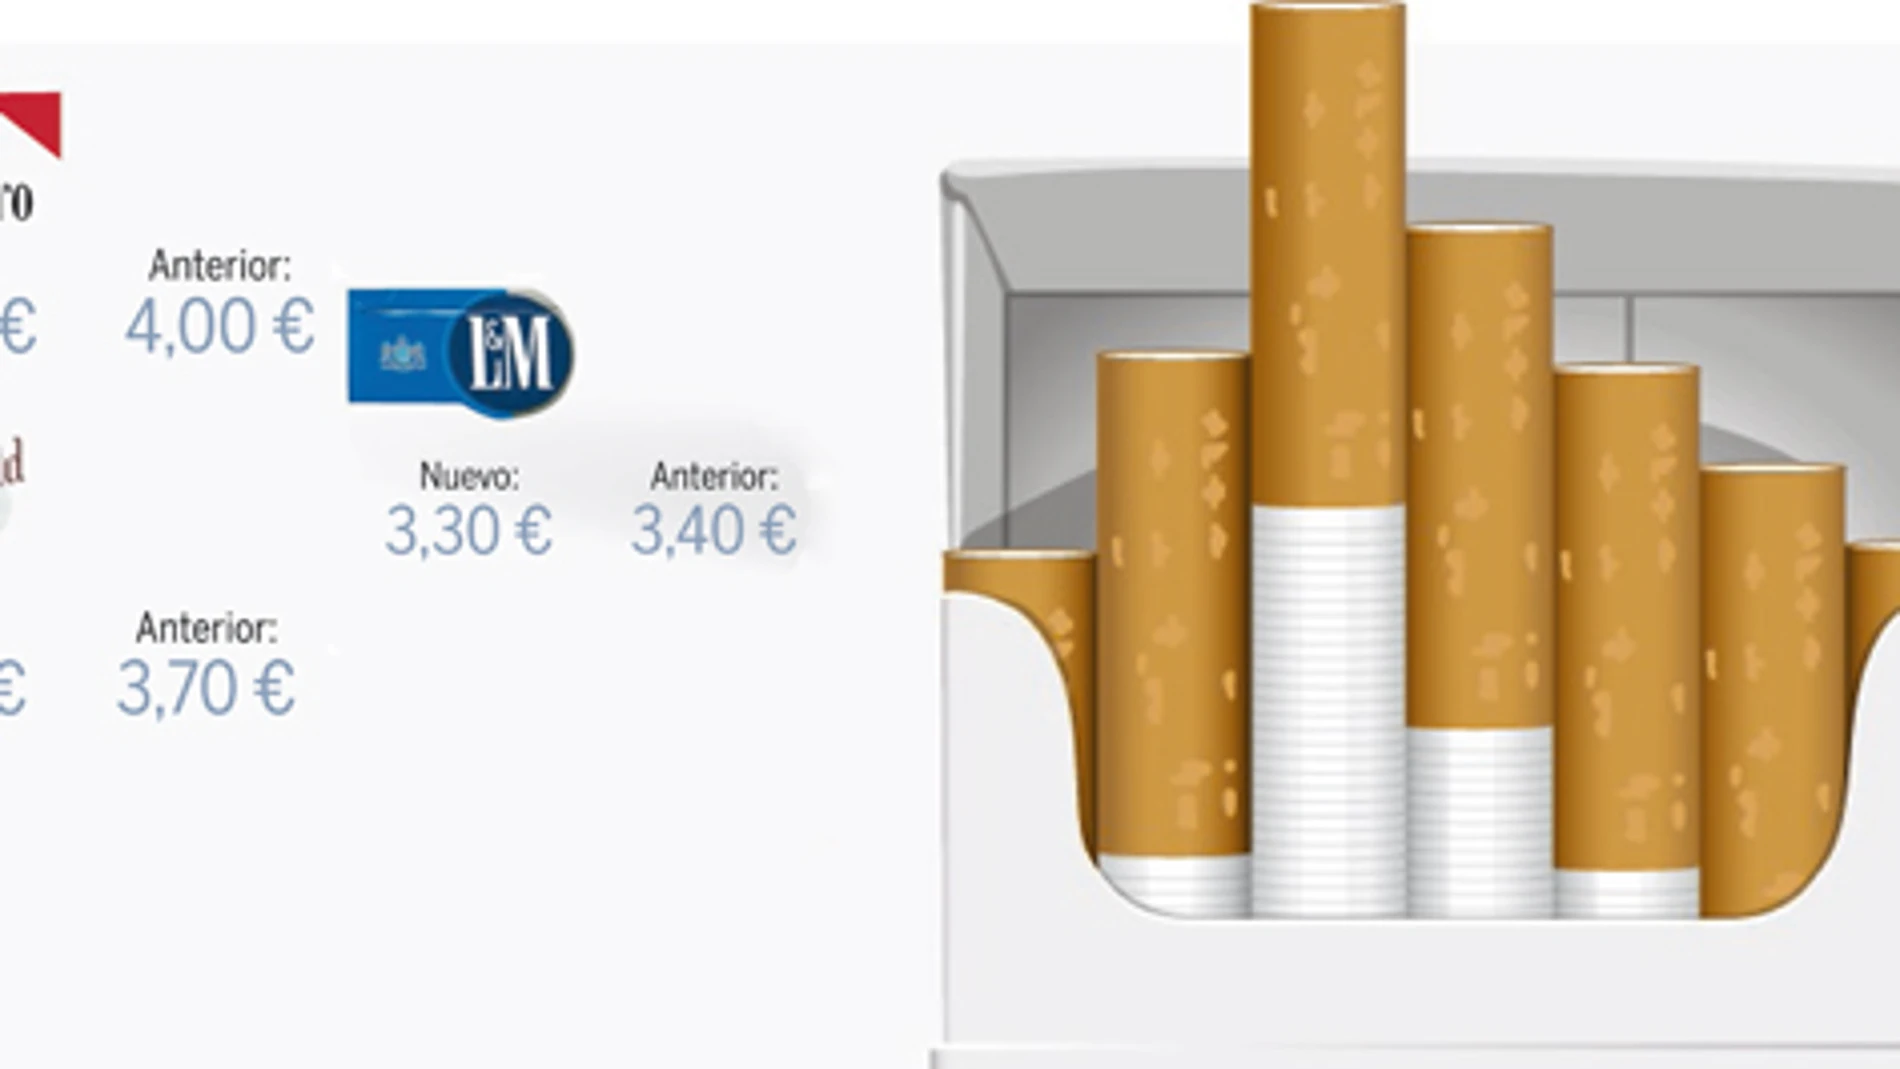 Philip Morris pone contra las cuerdas a Hacienda. Vea el GRÁFICO COMPLETO en documentos adjuntos